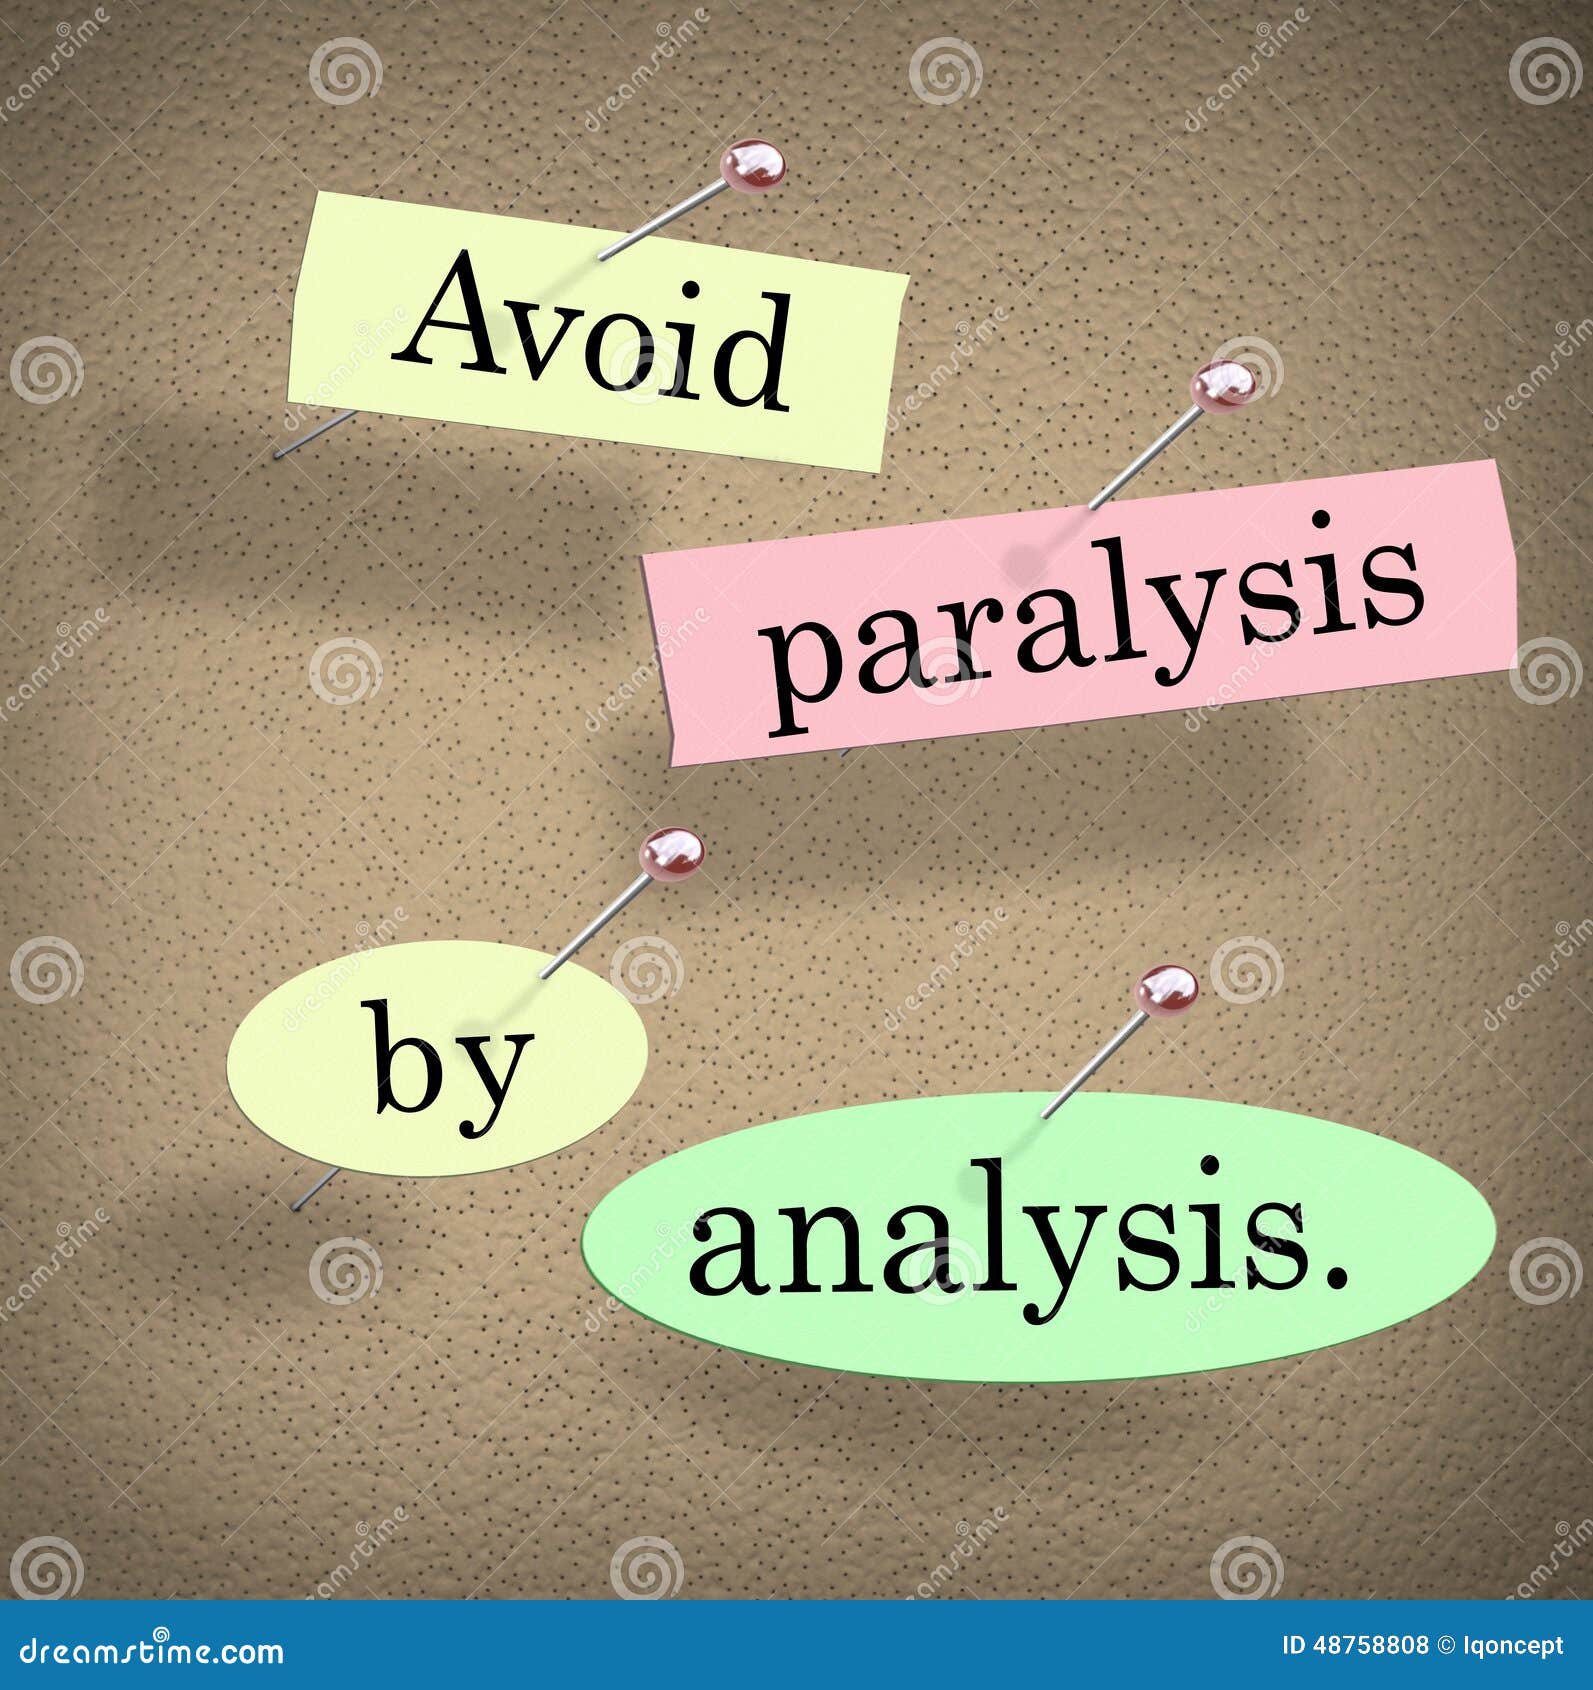 How to Avoid Analysis Paralysis